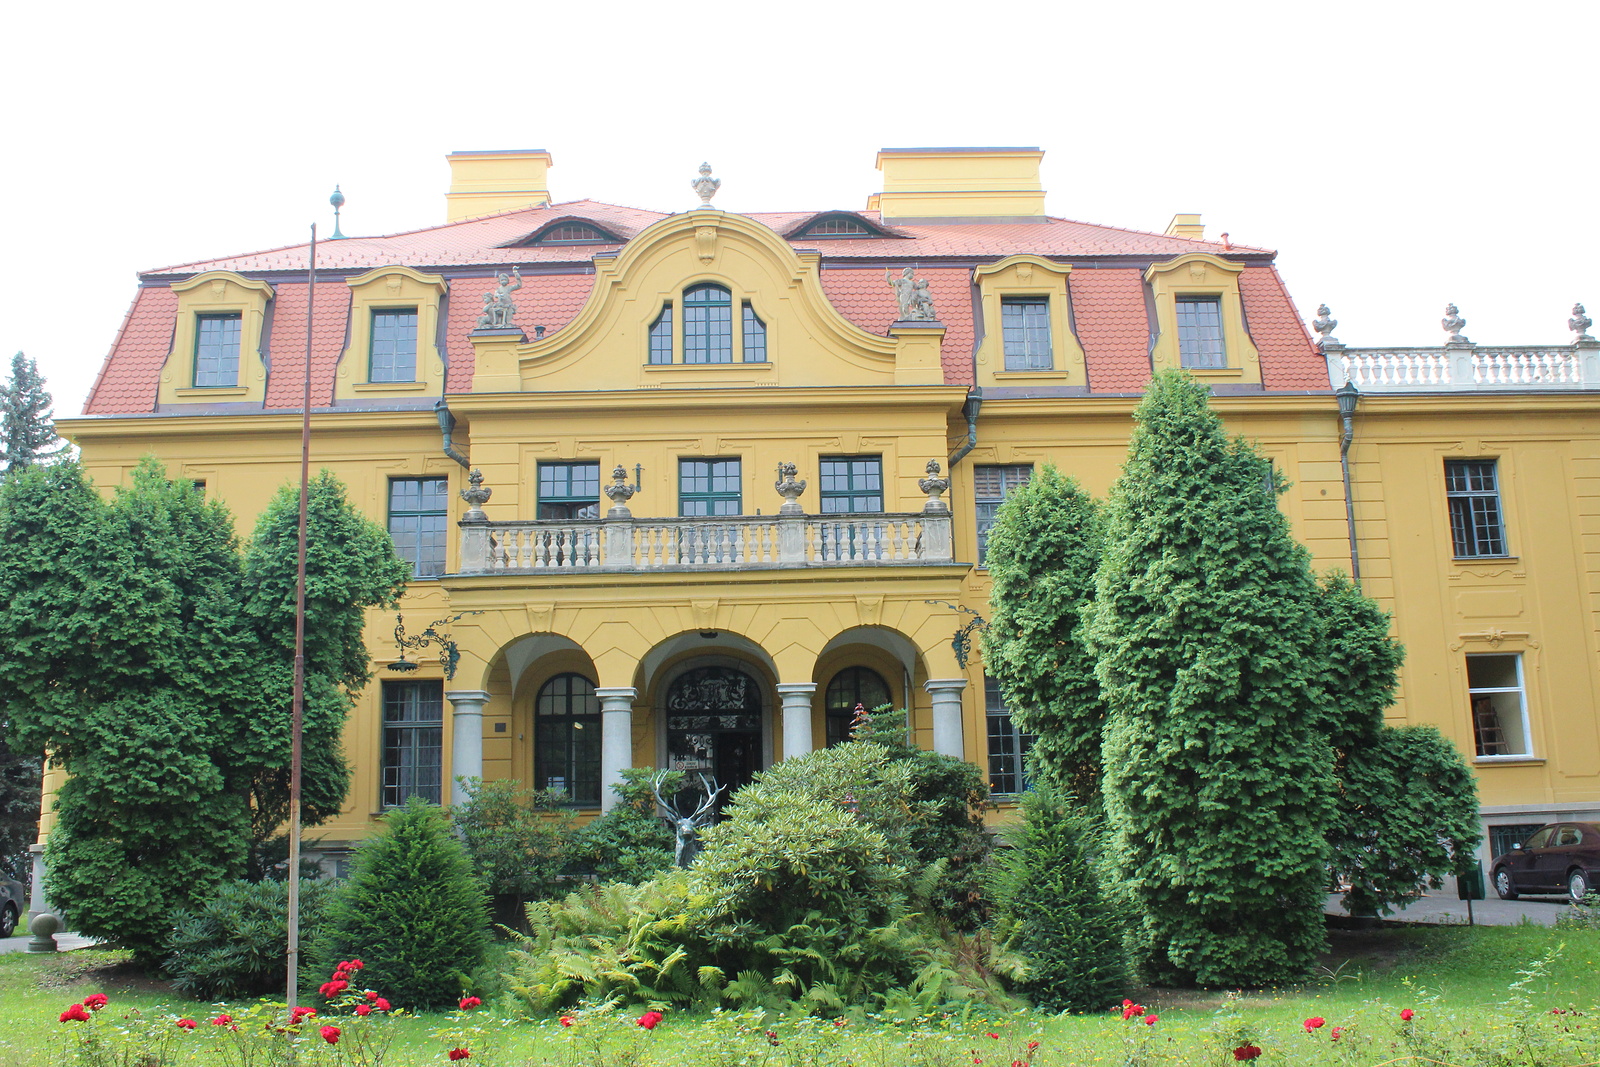 OBRAZEM: Dříve vilu obývala nejbohatší rodina v Budějovicích, teď patří  dětem - Českobudějovický deník